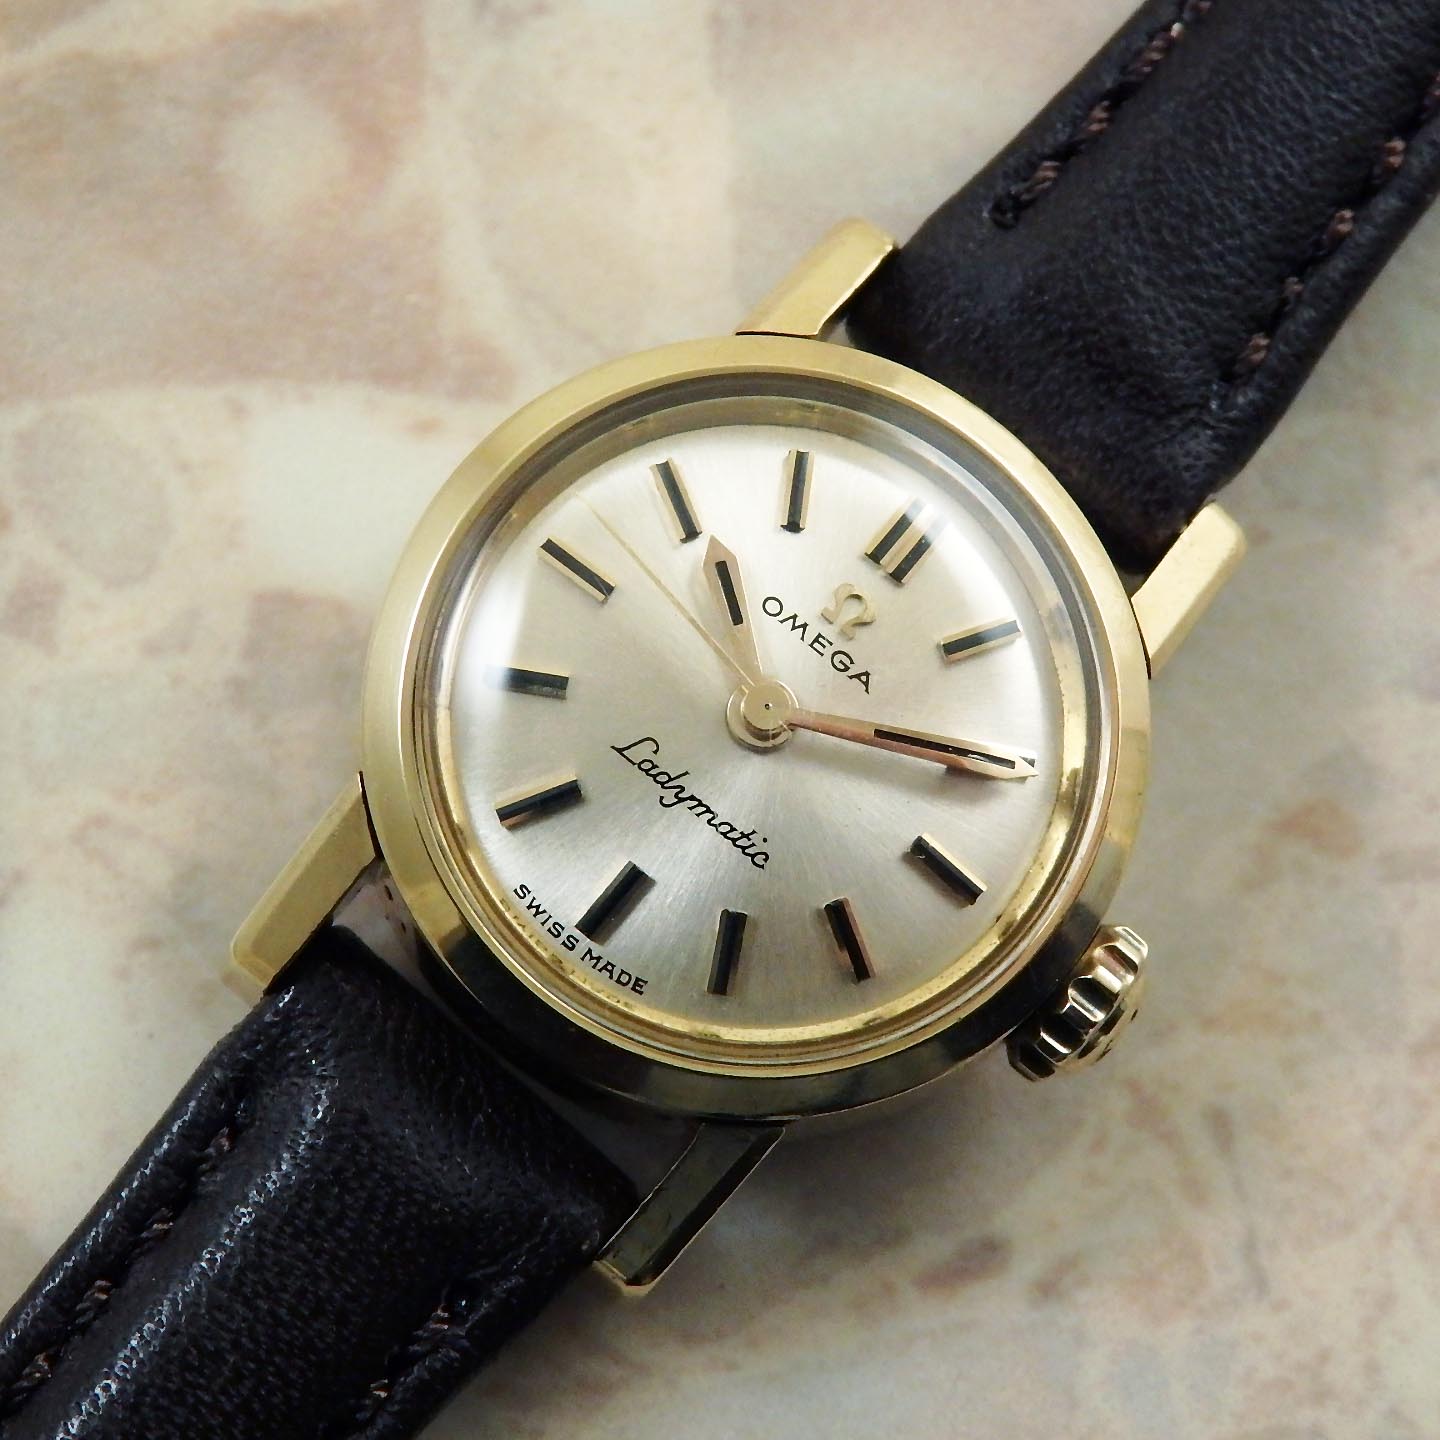 OMEGA Ladymatic アンティーク 腕時計 18KYG 金無垢 1961年 自動巻き レディーマチック